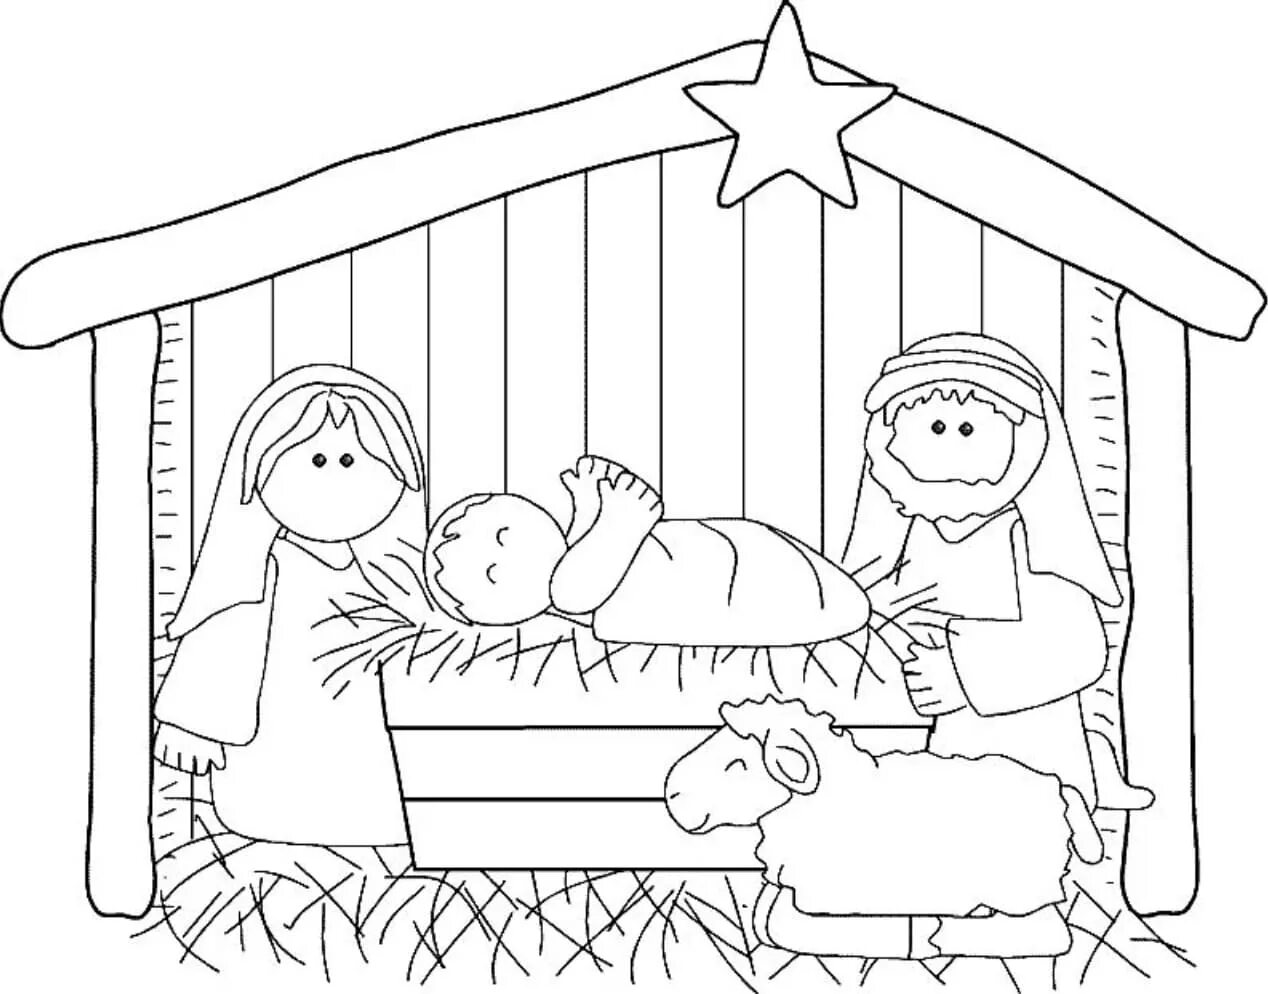 Christmas story for kids #1